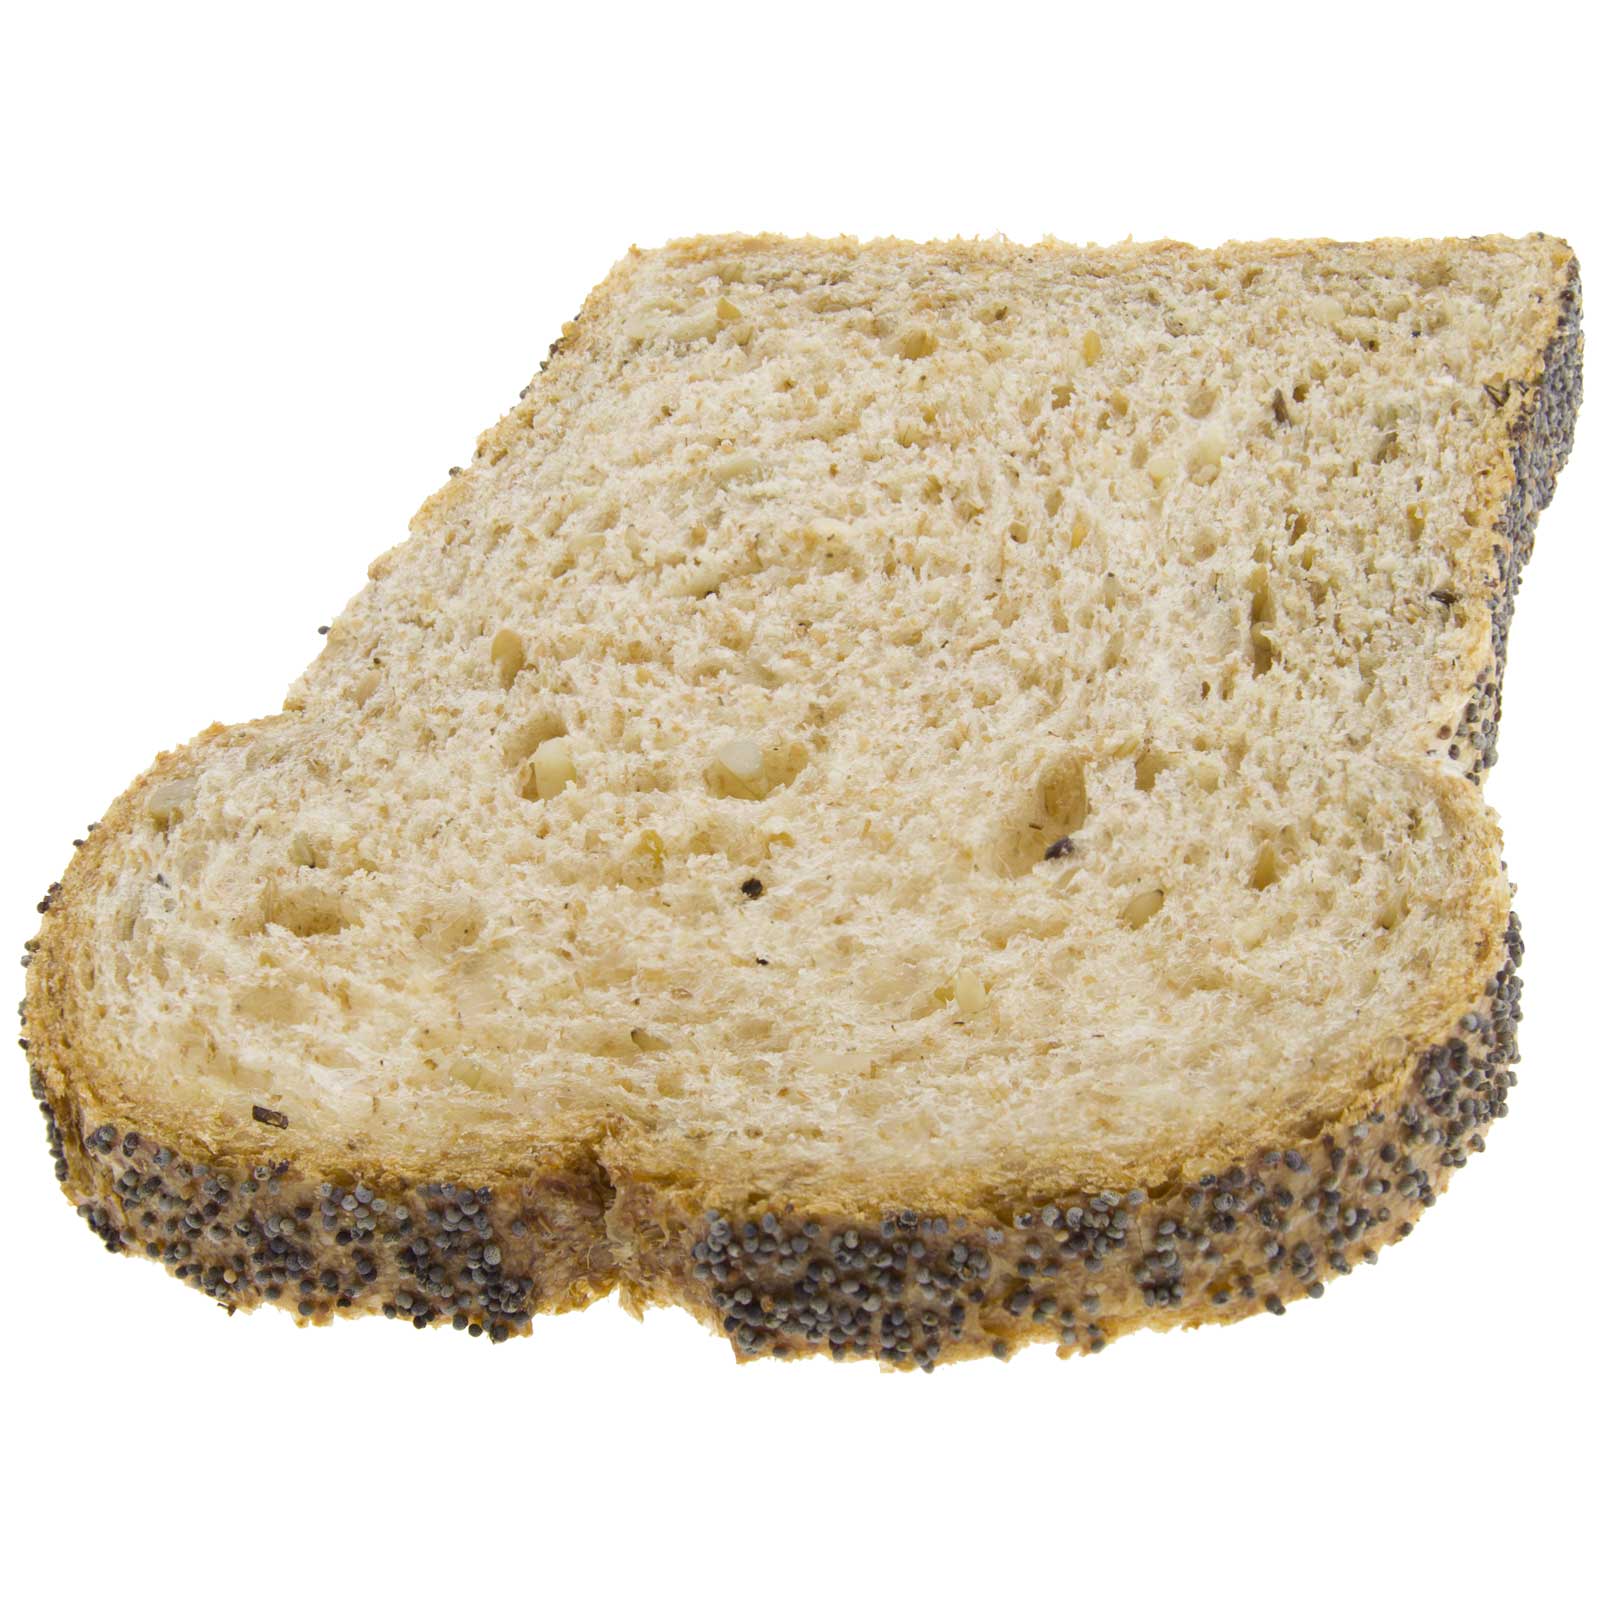 Pan de Molde de Espelta Integral con Semillas 450g Ecológico